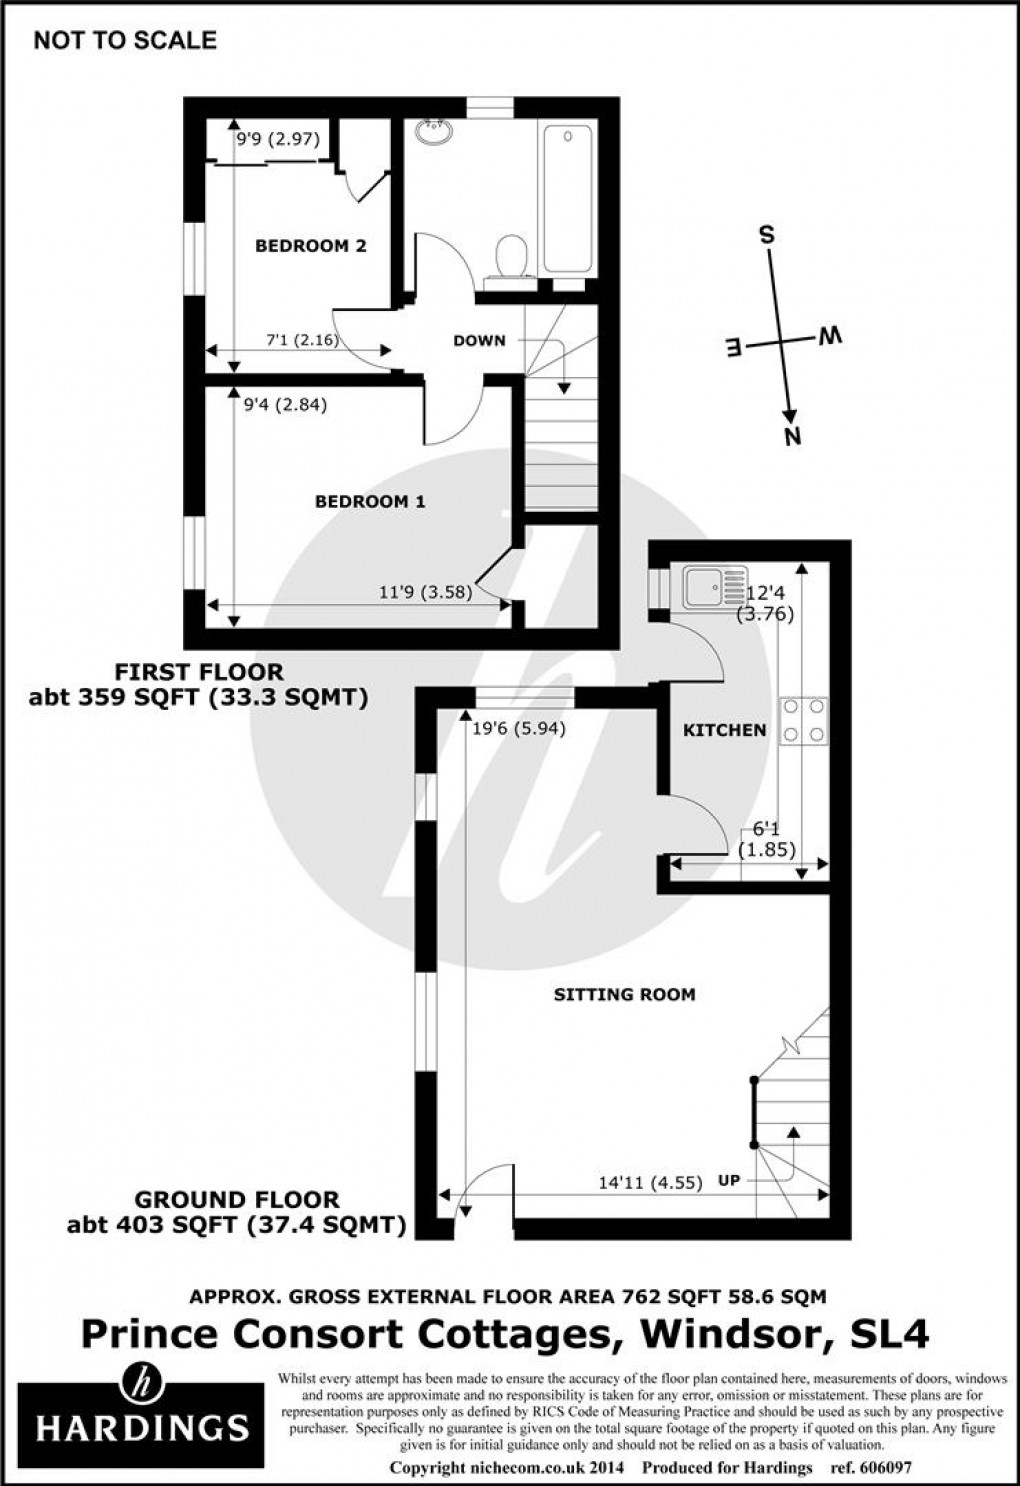 Floorplan for Prince Consort Cottages, Windsor